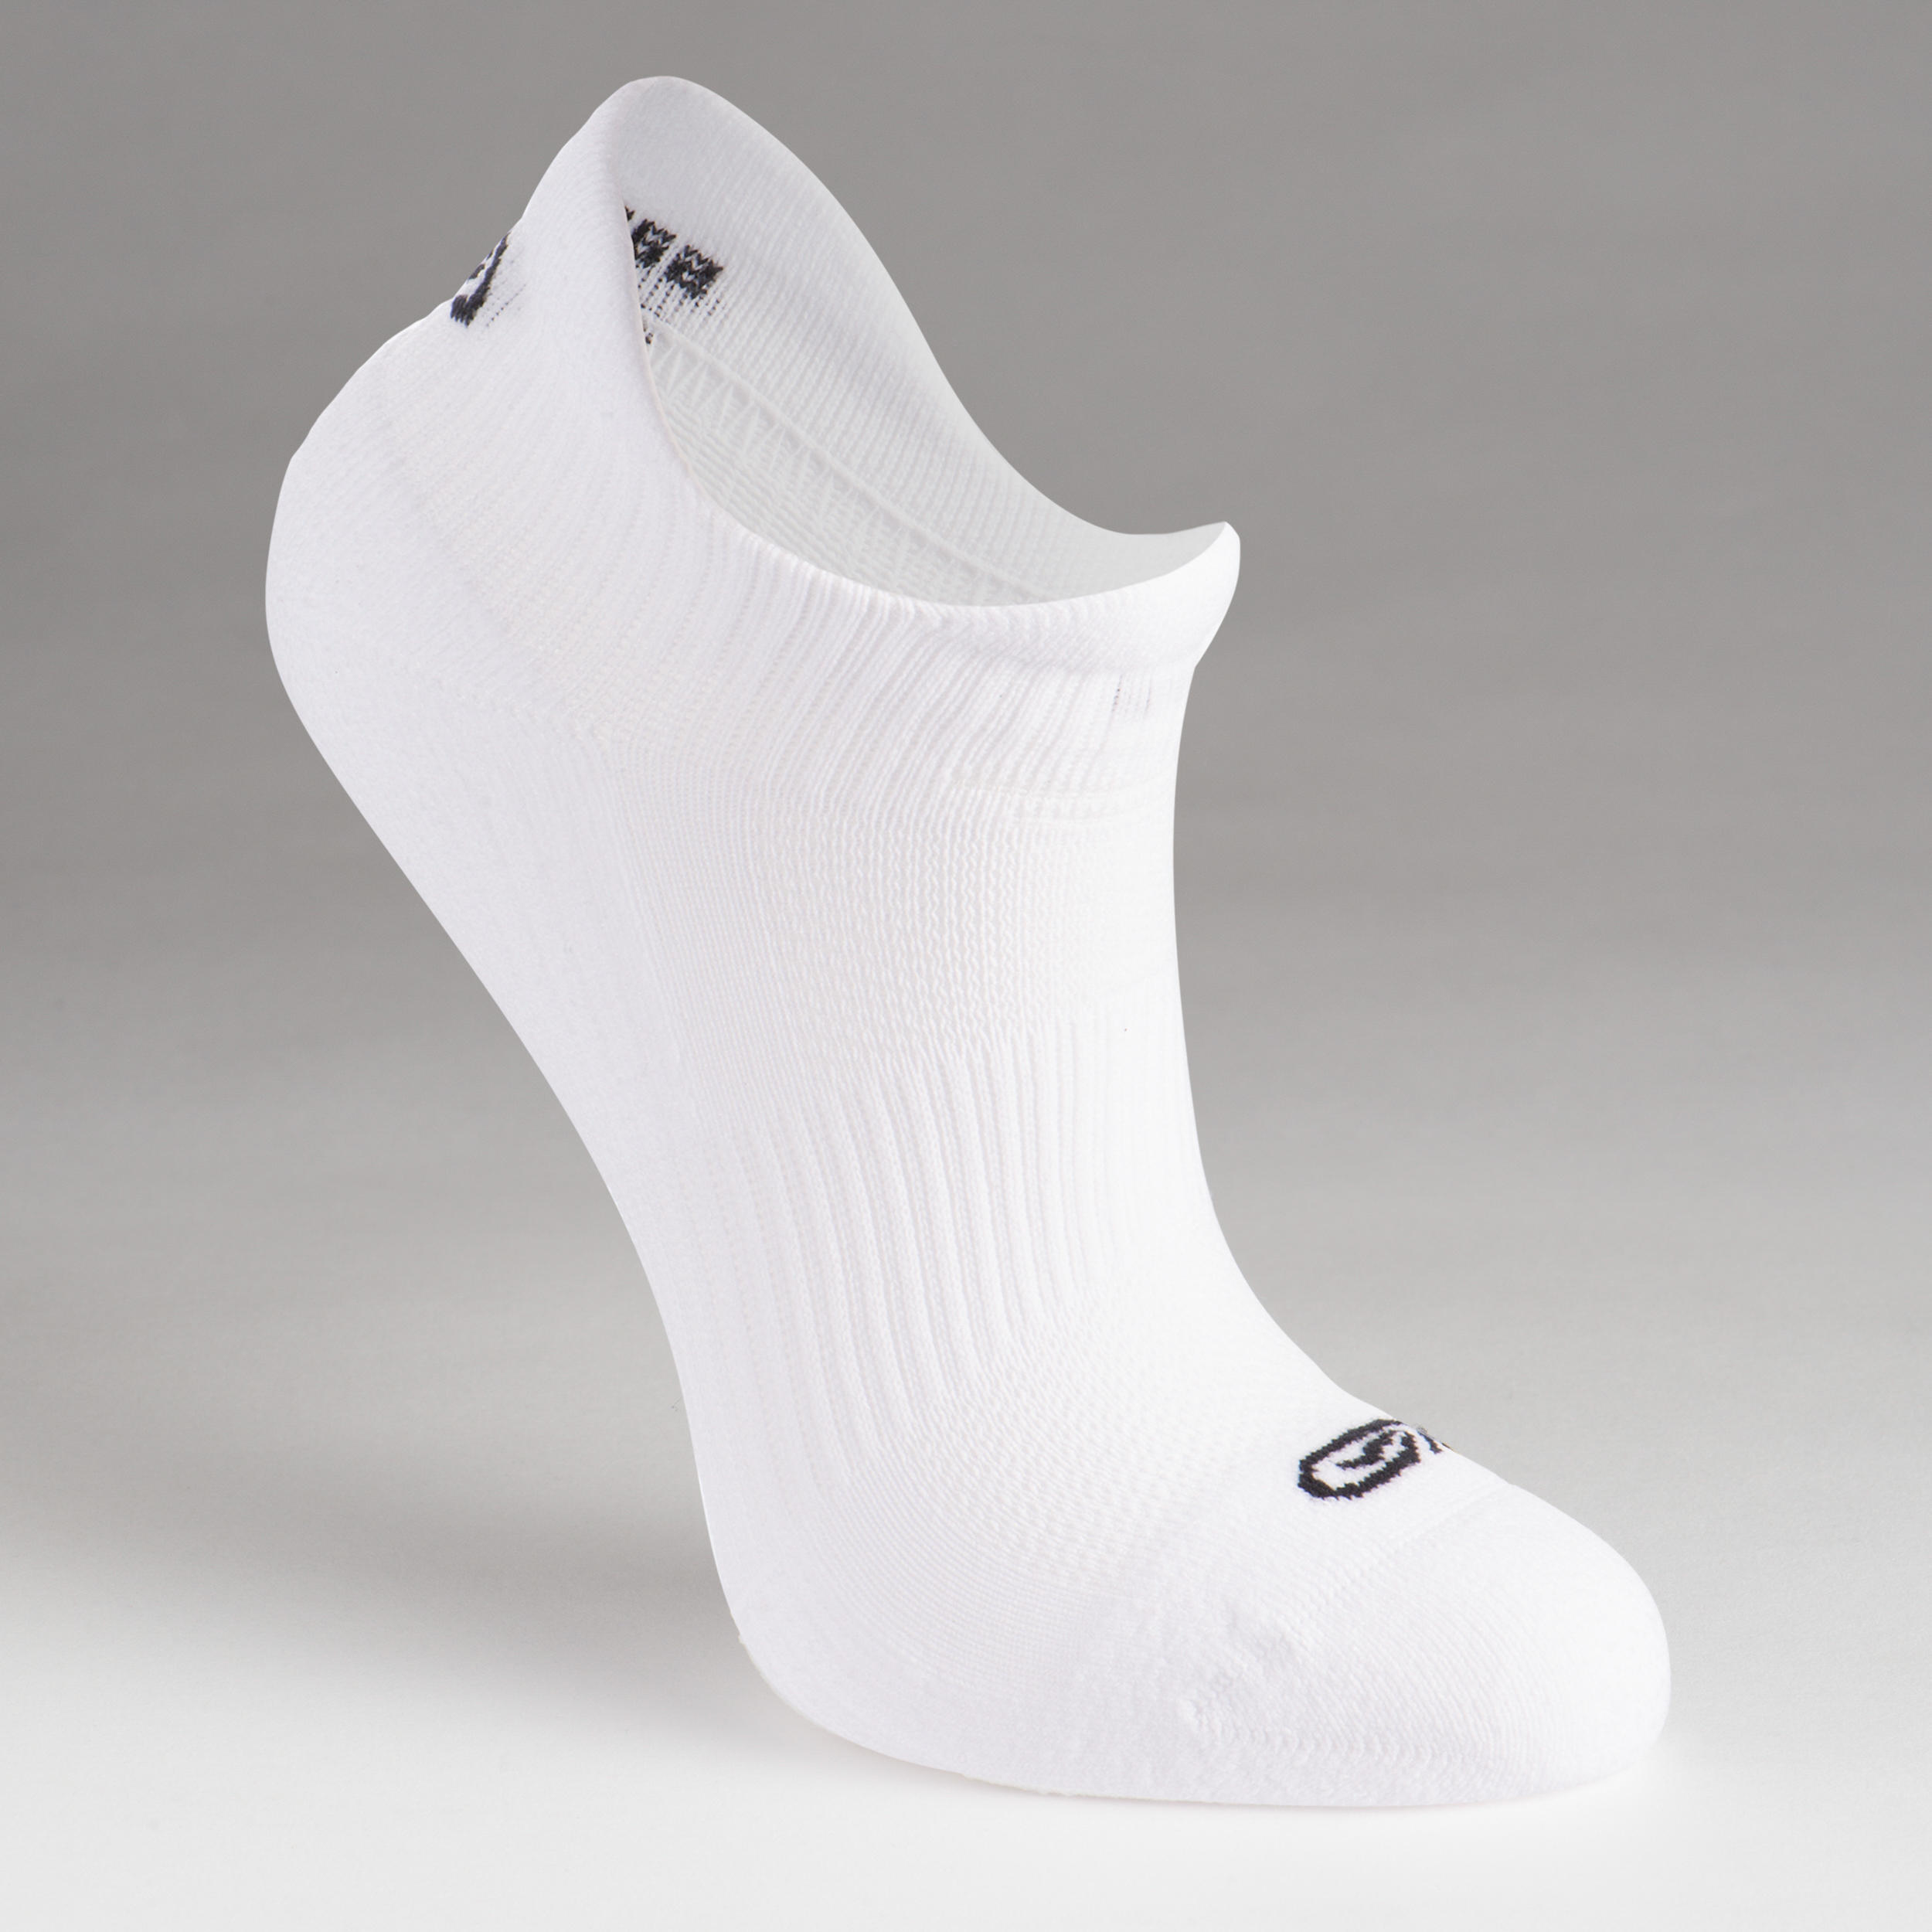 KIPRUN 500 INV kids comfort running socks 2-pack - black and white 4/9